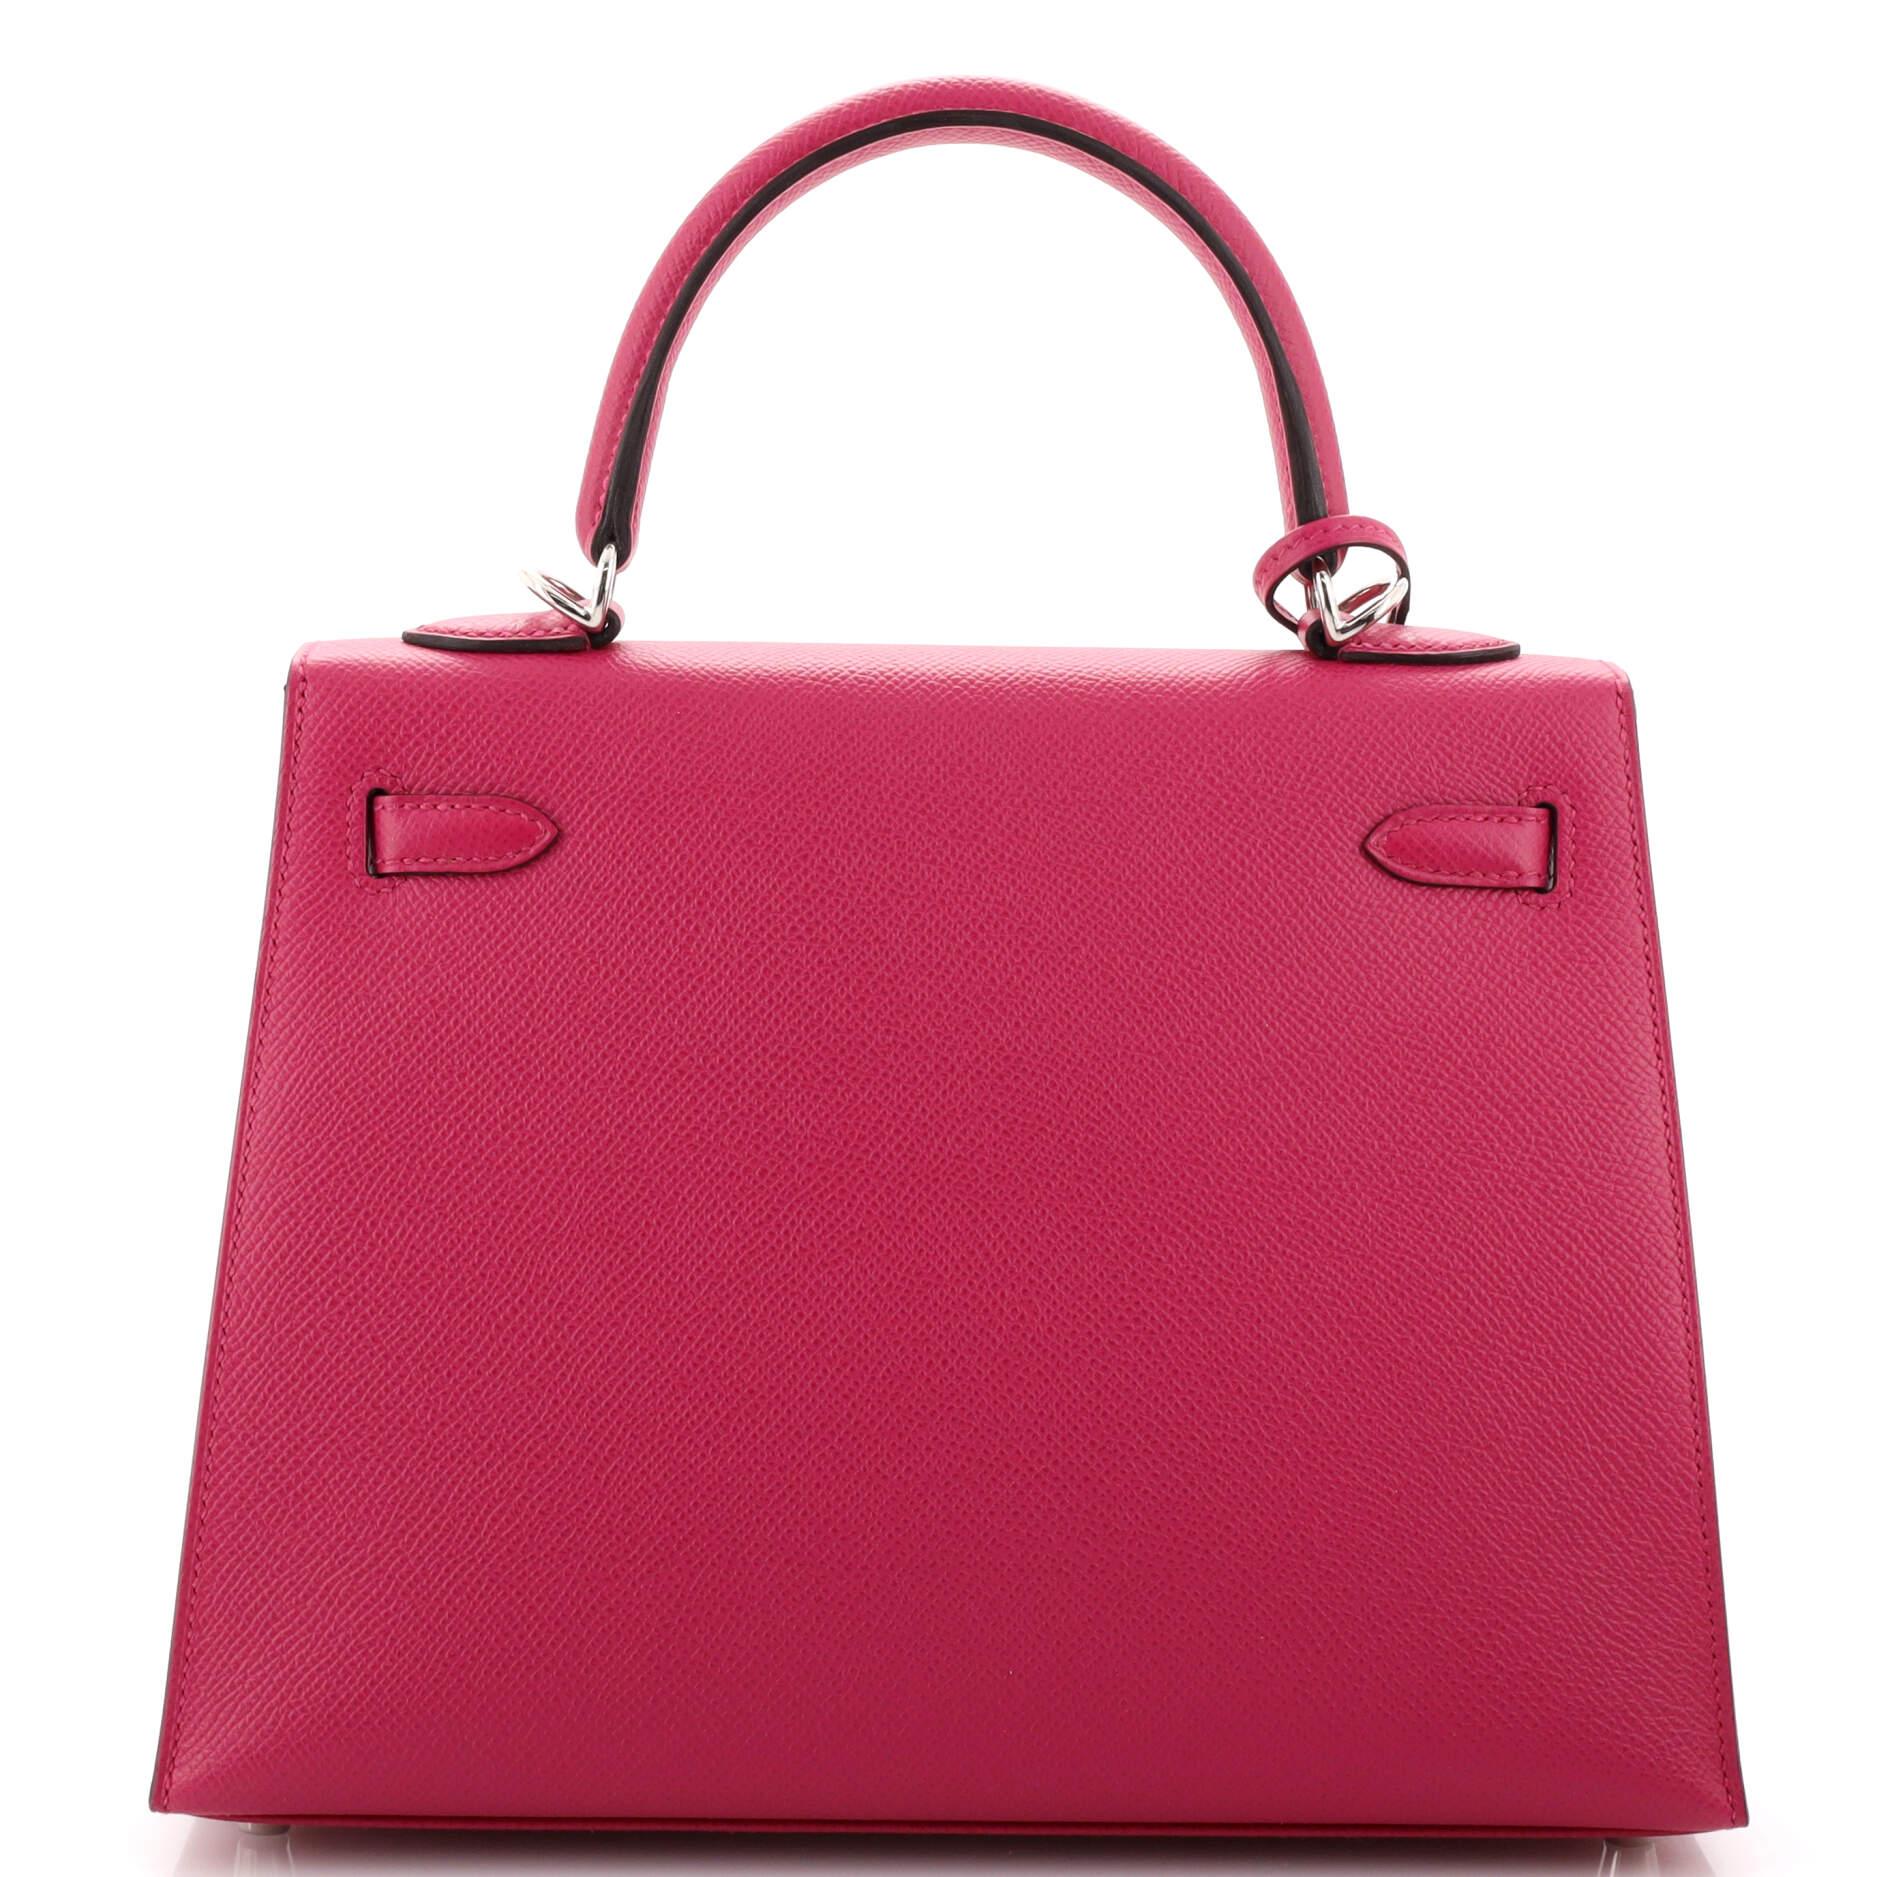 Women's or Men's Hermes Kelly Handbag Rose Pourpre Epsom with Palladium Hardware 25